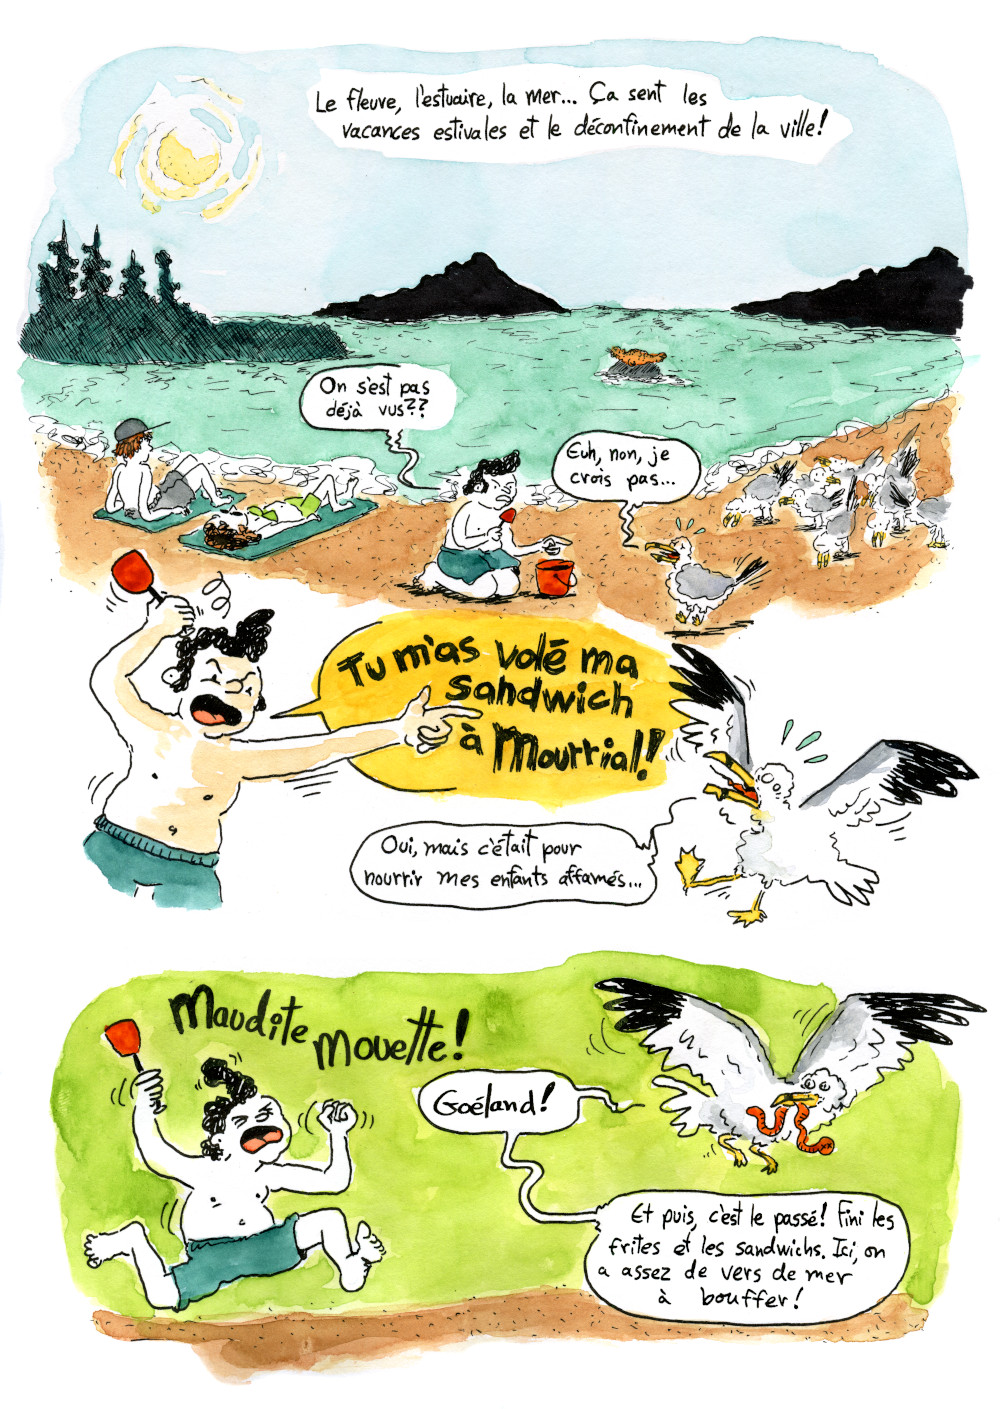 Bande dessinée de vulgarisation scientifique sur le goéland à bec cerclé: page 4, on montre la migration post-nidification des goélands au Québec